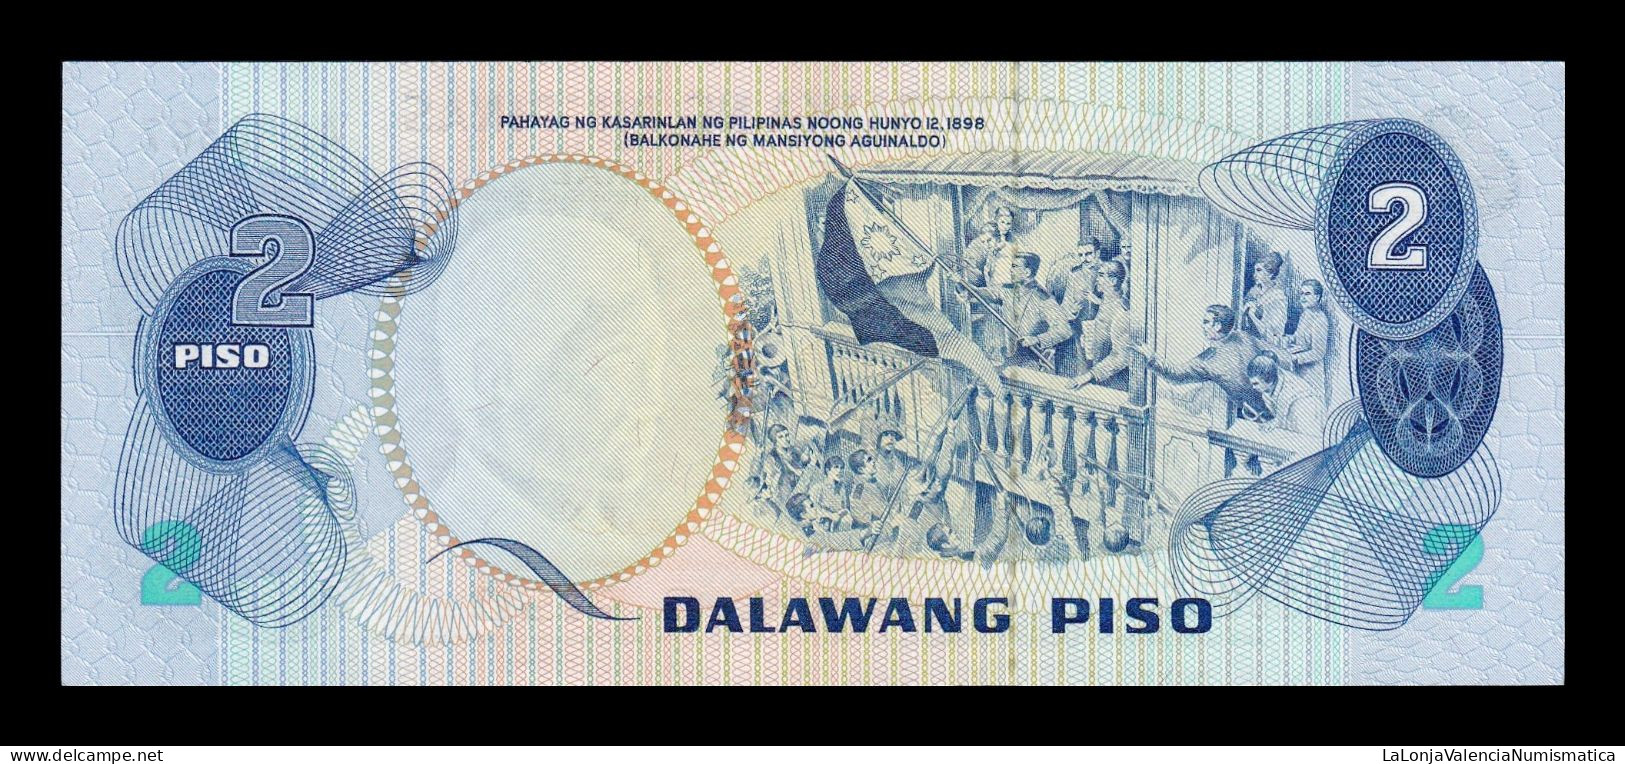 Filipinas Philippines 2 Piso Jose Rizal 1974 Pick 152 Sc Unc - Philippinen